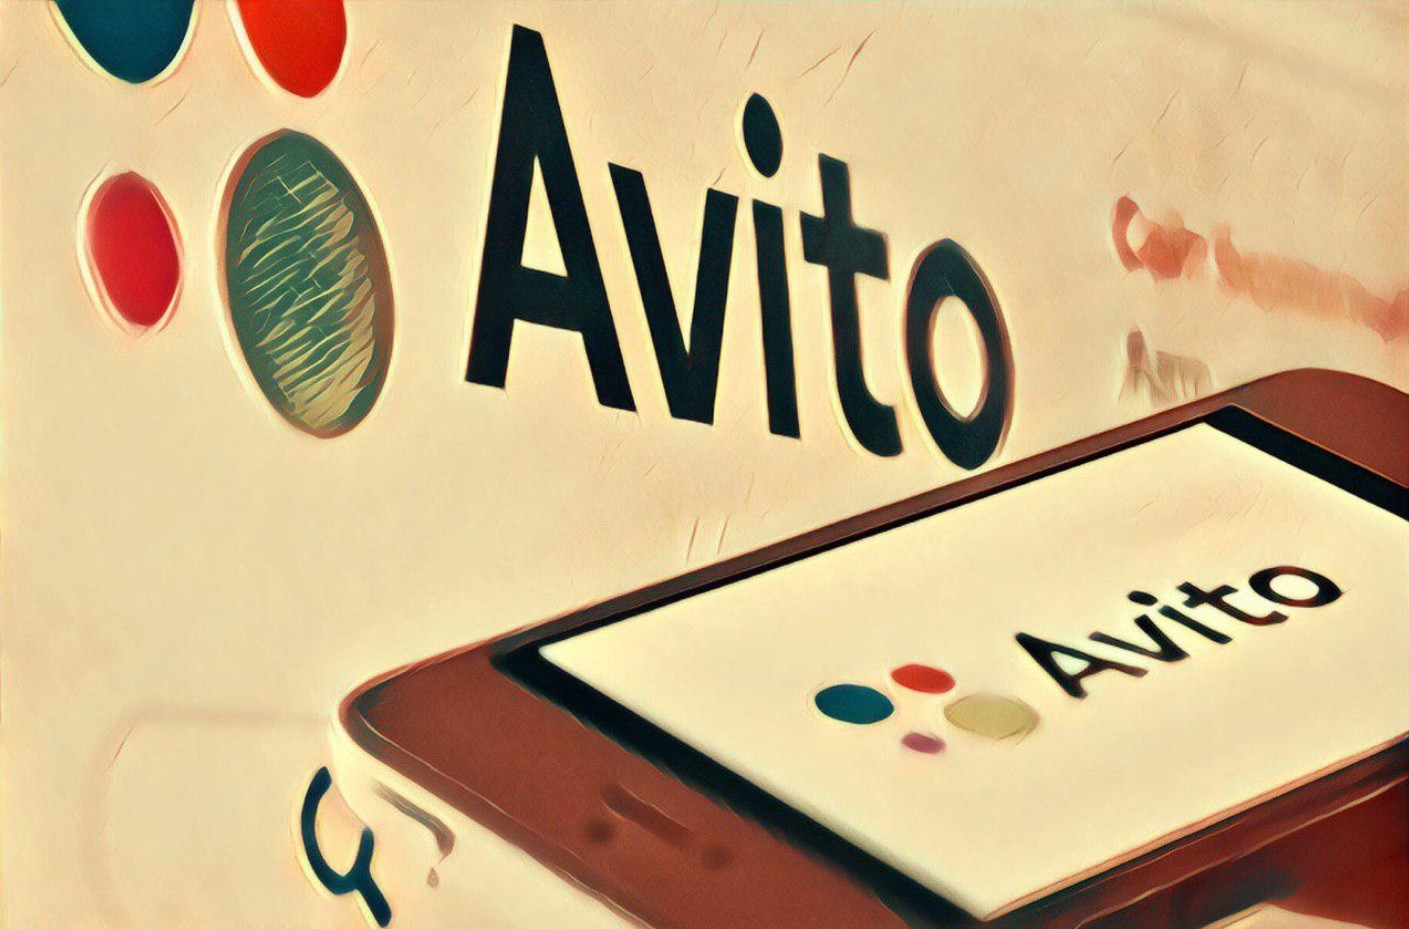 Właściciel i główny udziałowiec OLX, Avito, wycofuje się z rosyjskiego biznesu i sprzedaje udziały w największej rosyjskiej witrynie reklamowej